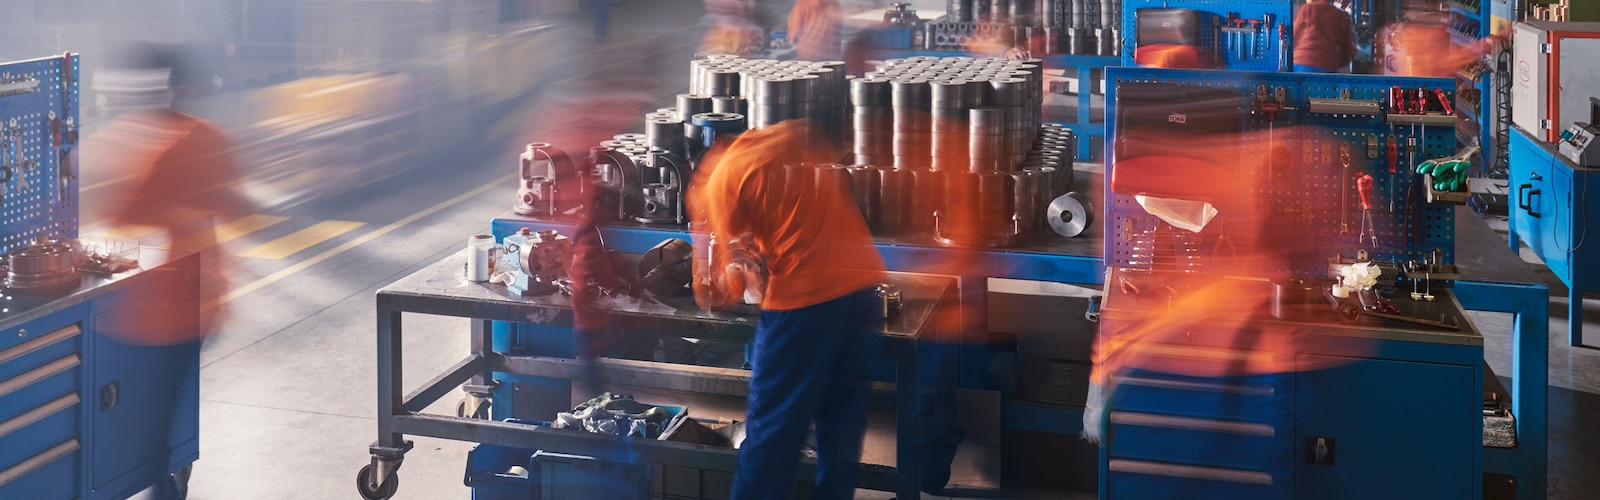 Tork, een timelapse-afbeelding toont fabrieksarbeiders in een drukke industriële omgeving